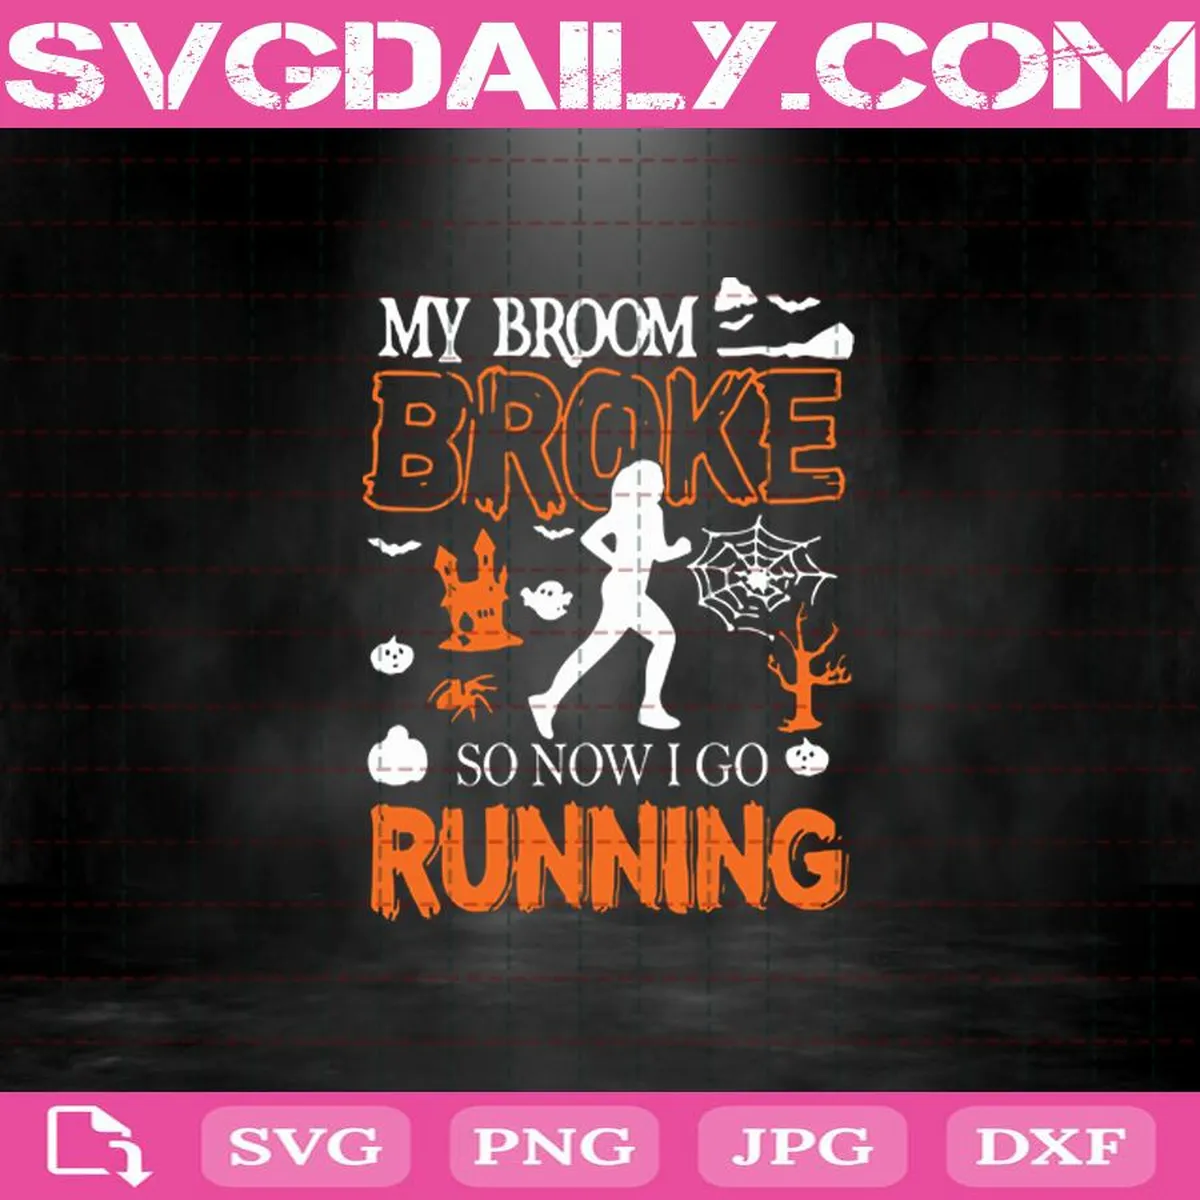 My Broom Broke So Now I Go Running Svg, Trending Svg, Strong Girl Svg, Strong Woman Svg, Running Svg